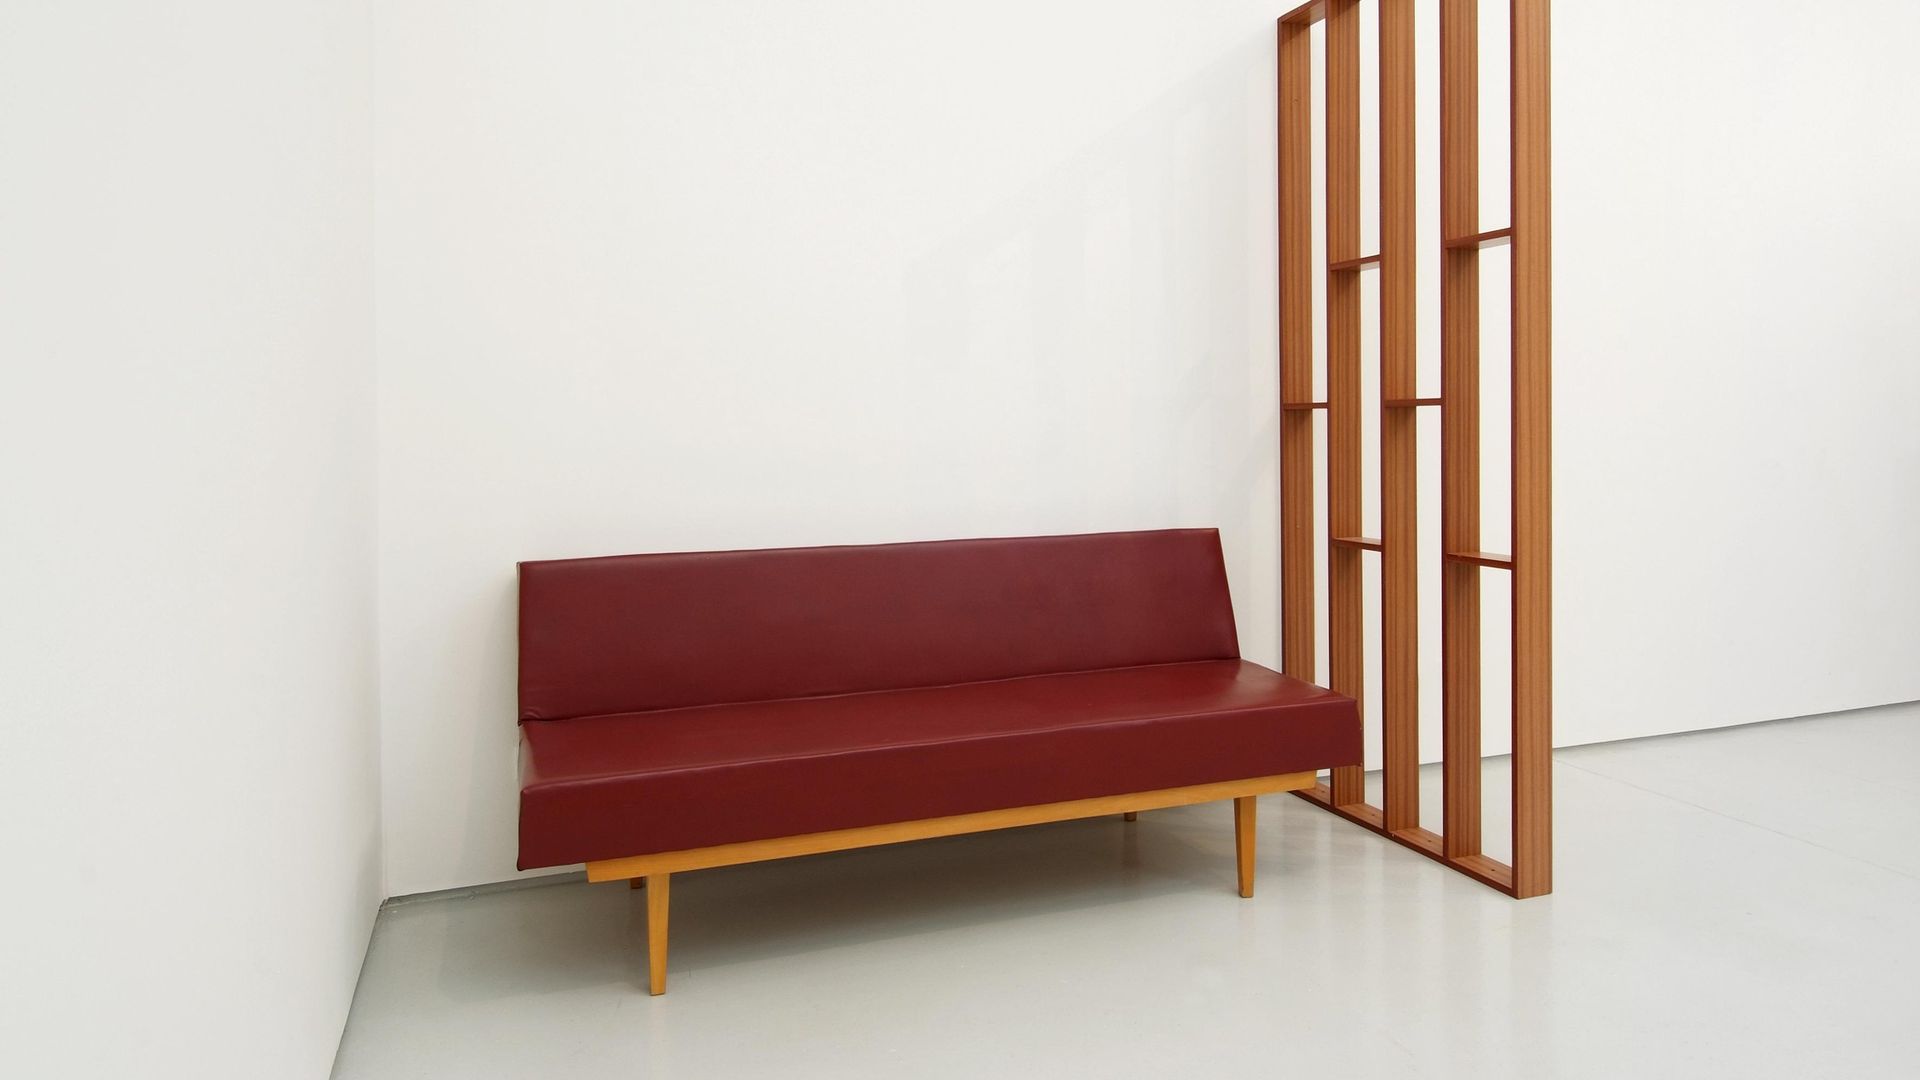 Roman Ondák, Resting Corner, Installation view KAI 10 | Raum für Kunst, photographer: Hendrik Reinert